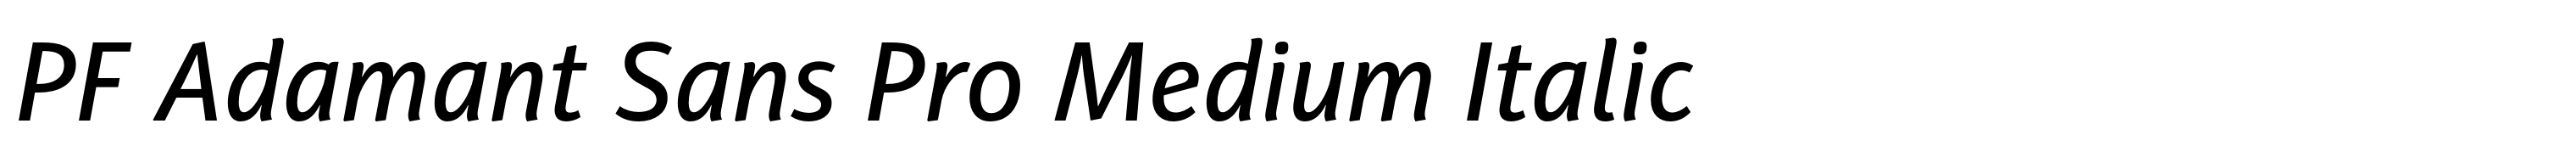 PF Adamant Sans Pro Medium Italic